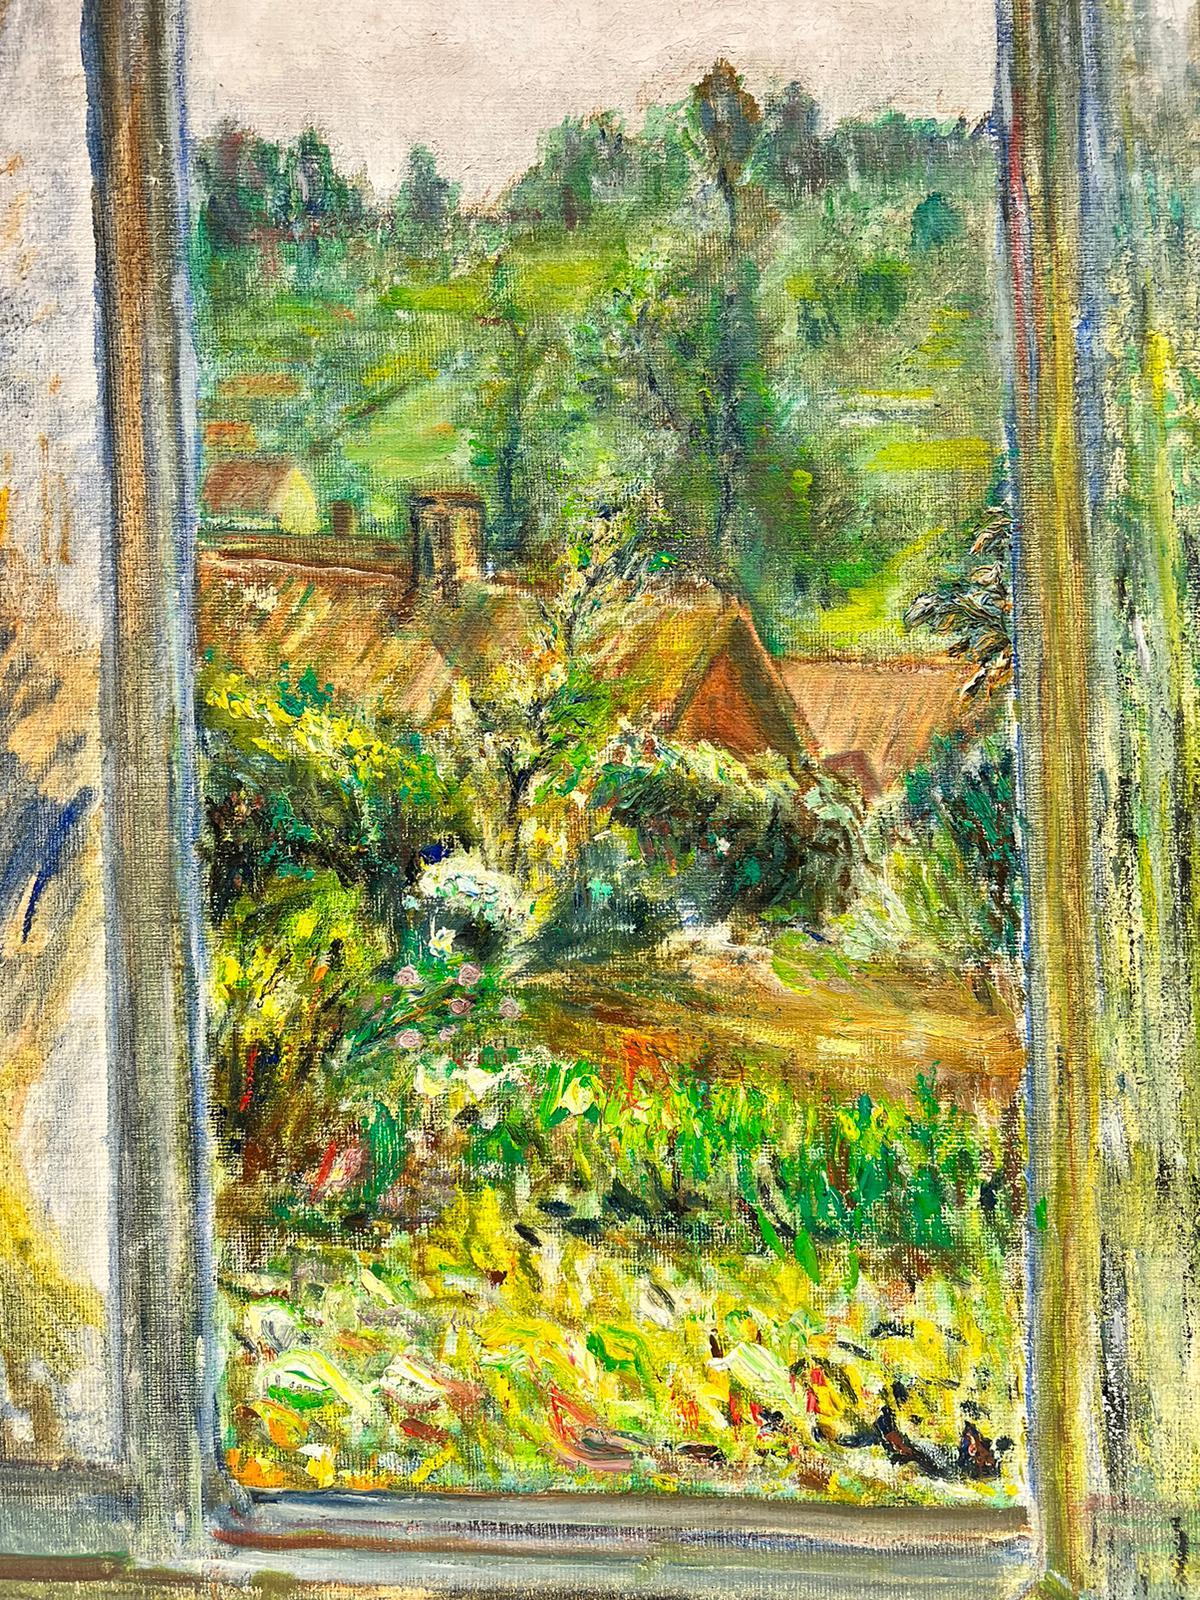 Artisten/Schule: Französischer Impressionist, Anfang 1900, wahrscheinlich eine unvollendete Skizze, daher nicht signiert. 

Titel: Verträumte Gartenansicht, Blick aus dem Fenster auf eine tiefgrüne und lebendige Gartenlandschaft

Medium: Öl auf